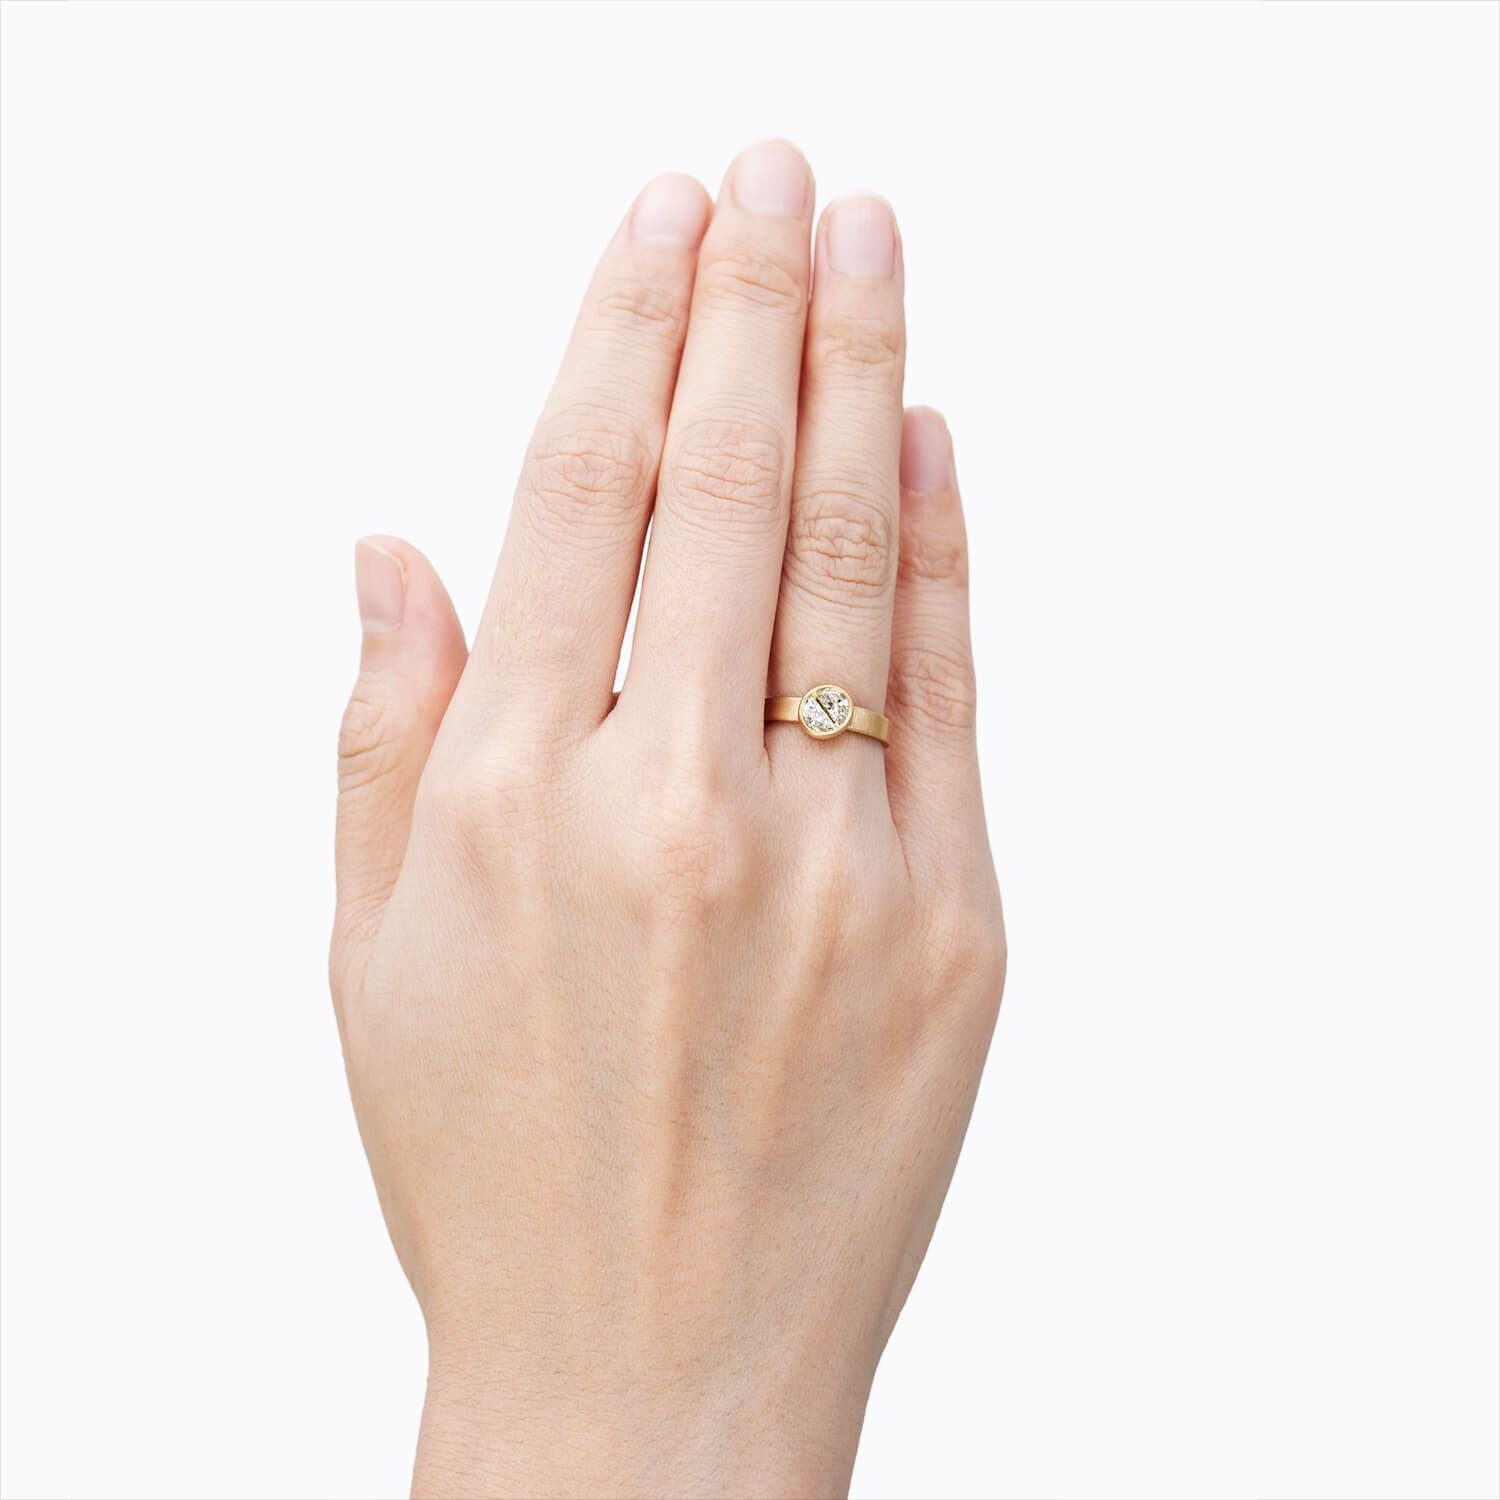 Shihara Align Half Round Diamond Ring 01 | Tortoise General Store